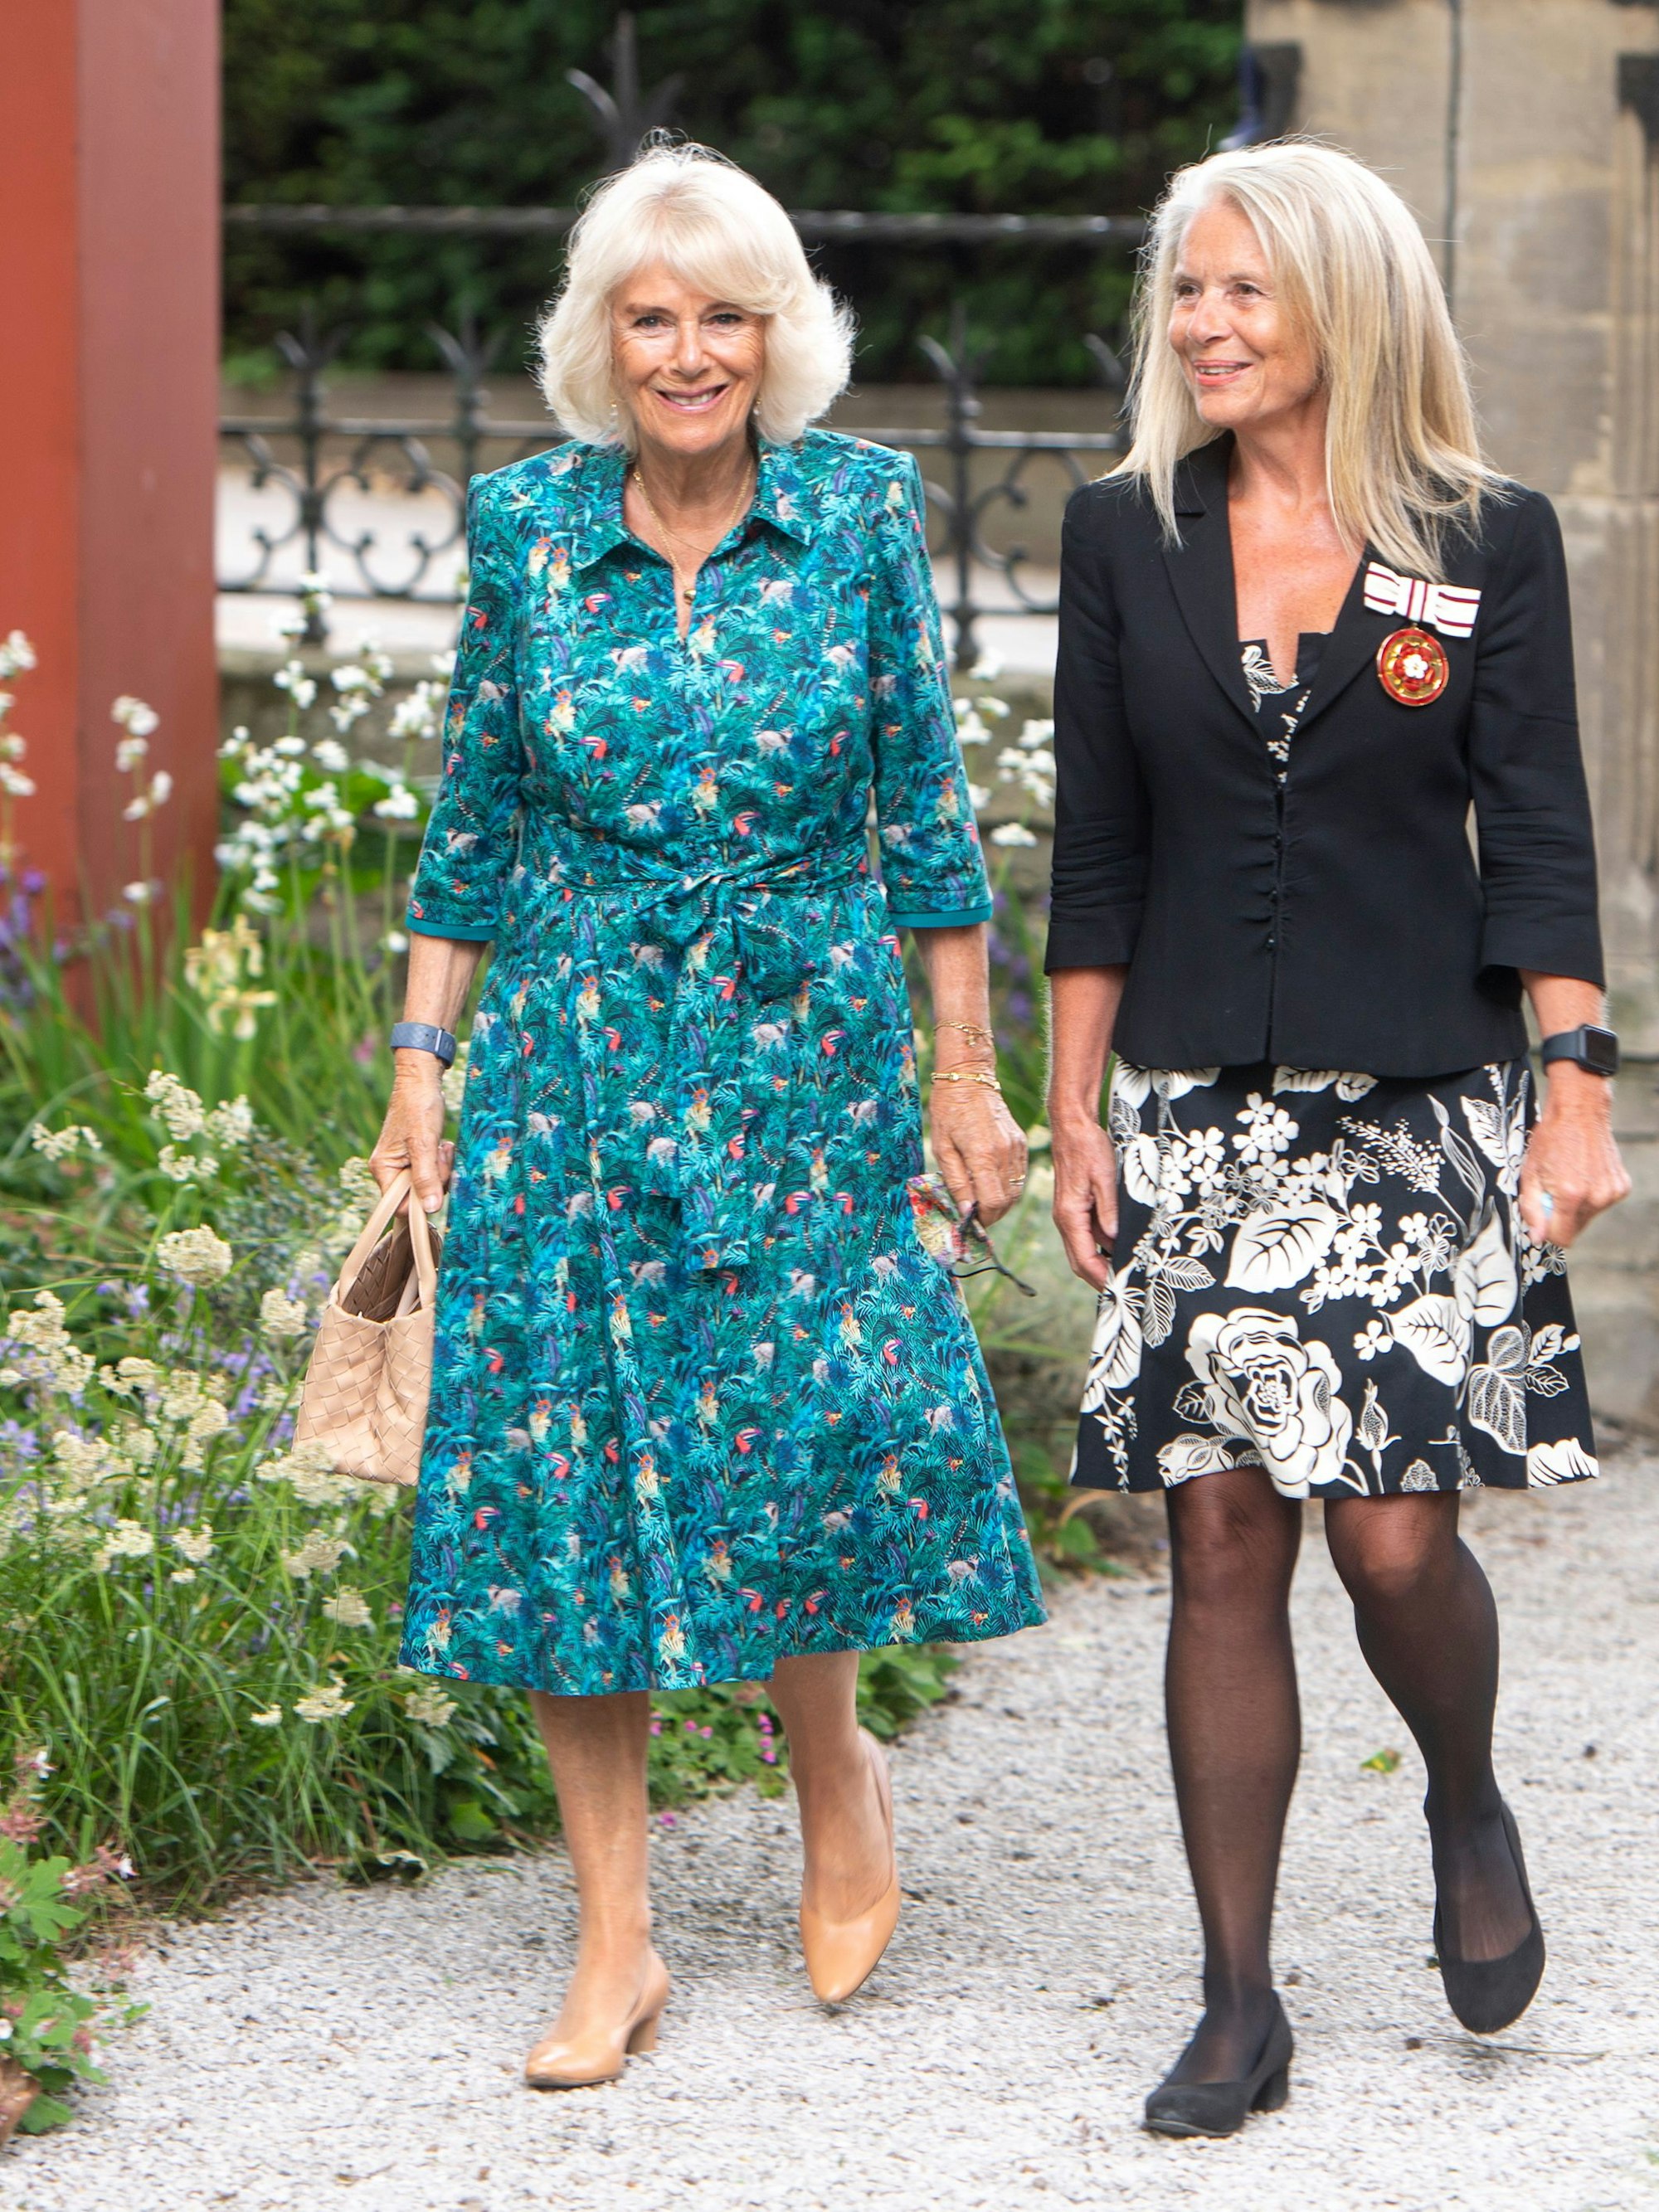 Königin Camilla wird bei ihrer Krönung wahrscheinlich Schuhe von Sole Bliss tragen, wie hier beim Besuch des Gartenmuseums anlässlich der Eröffnung der jährlichen British Flowers Week 2021, die als ihre Lieblingsmarke gilt.